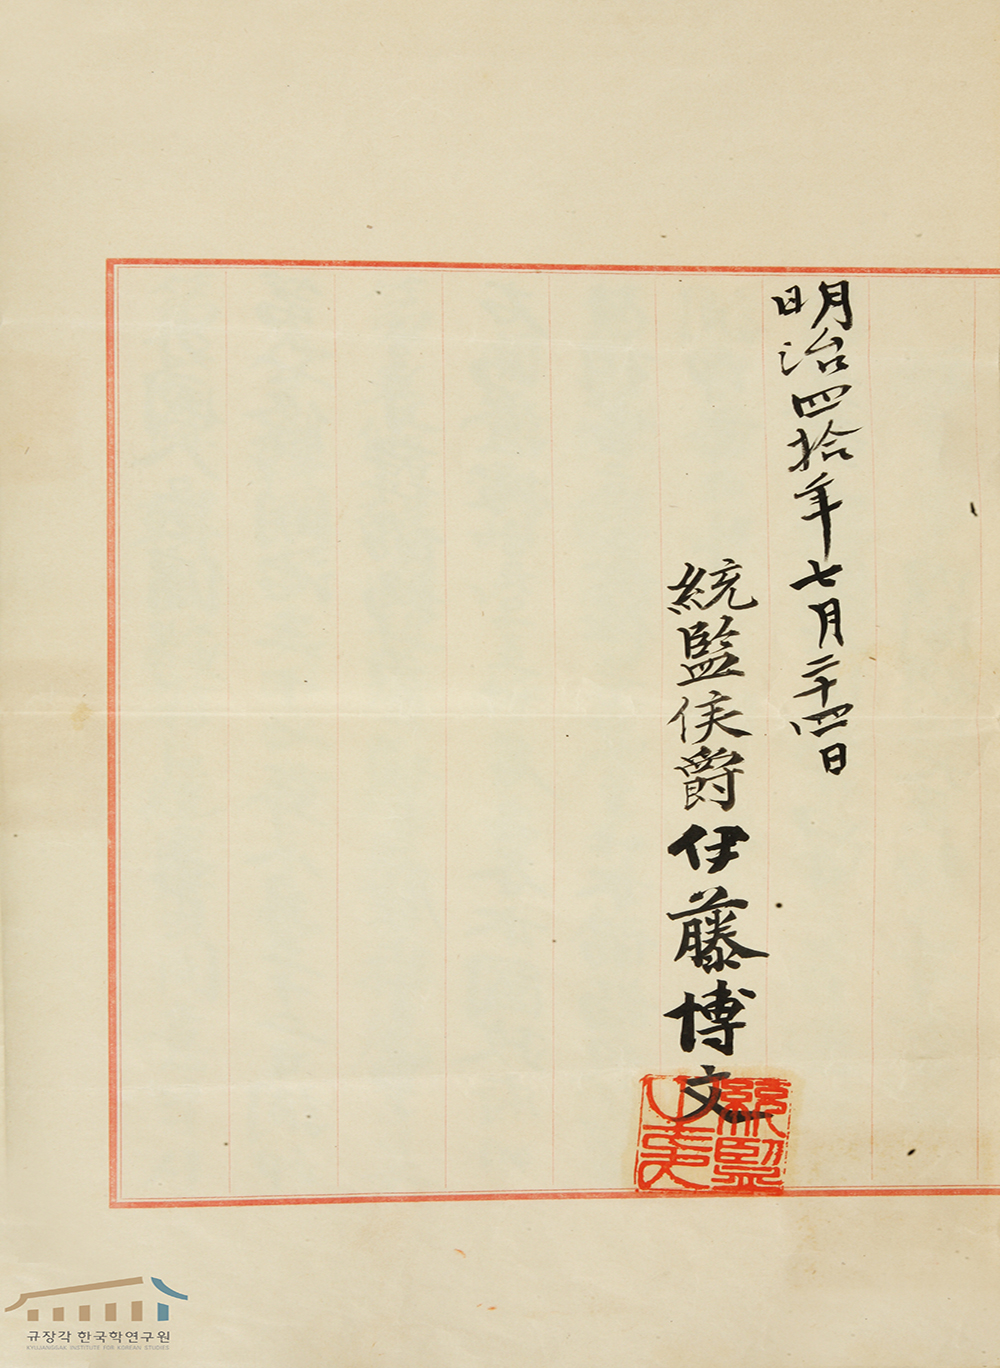 The Korea-Japan Treaty of 1907